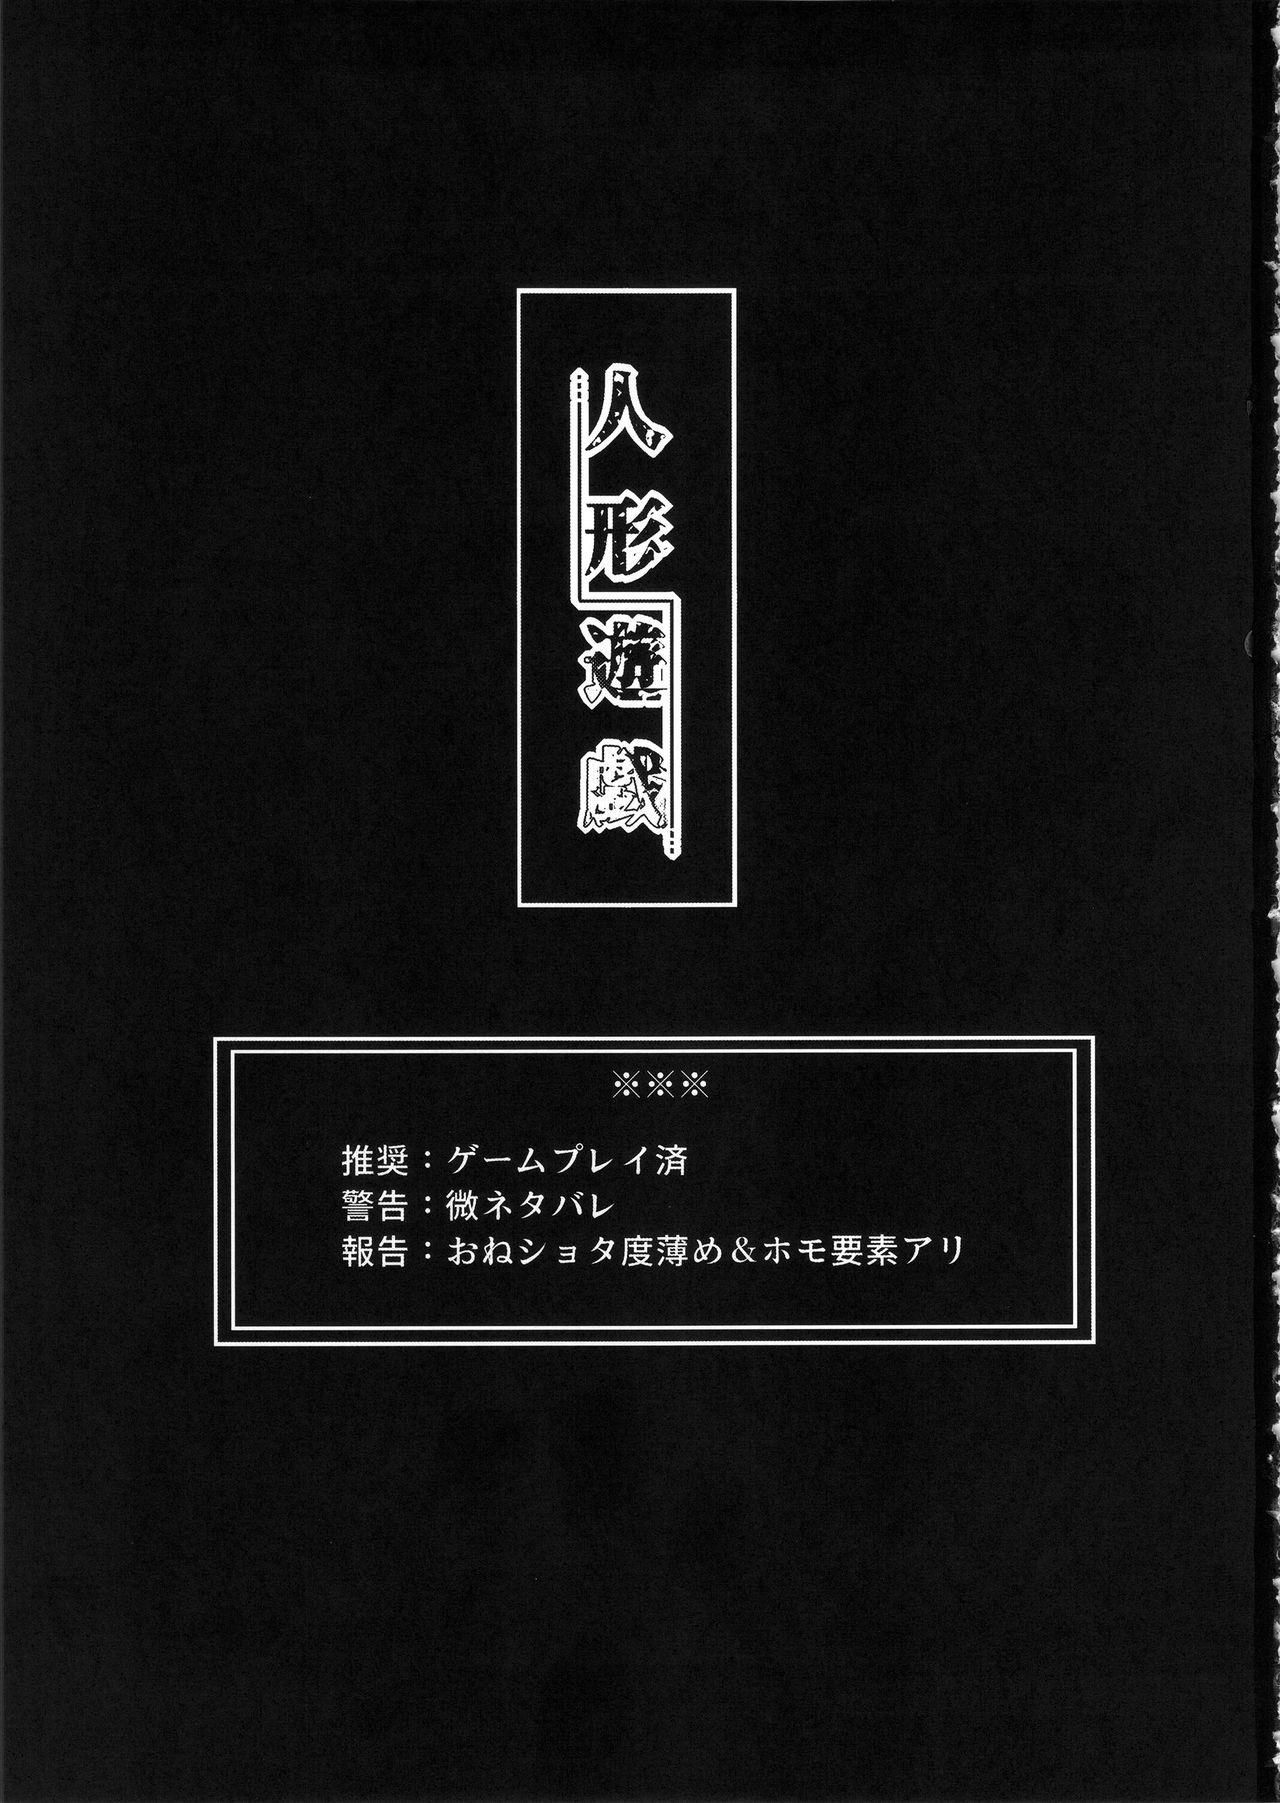 Guyonshemale Ningyou Yuugi - Nier automata Shoplifter - Page 2